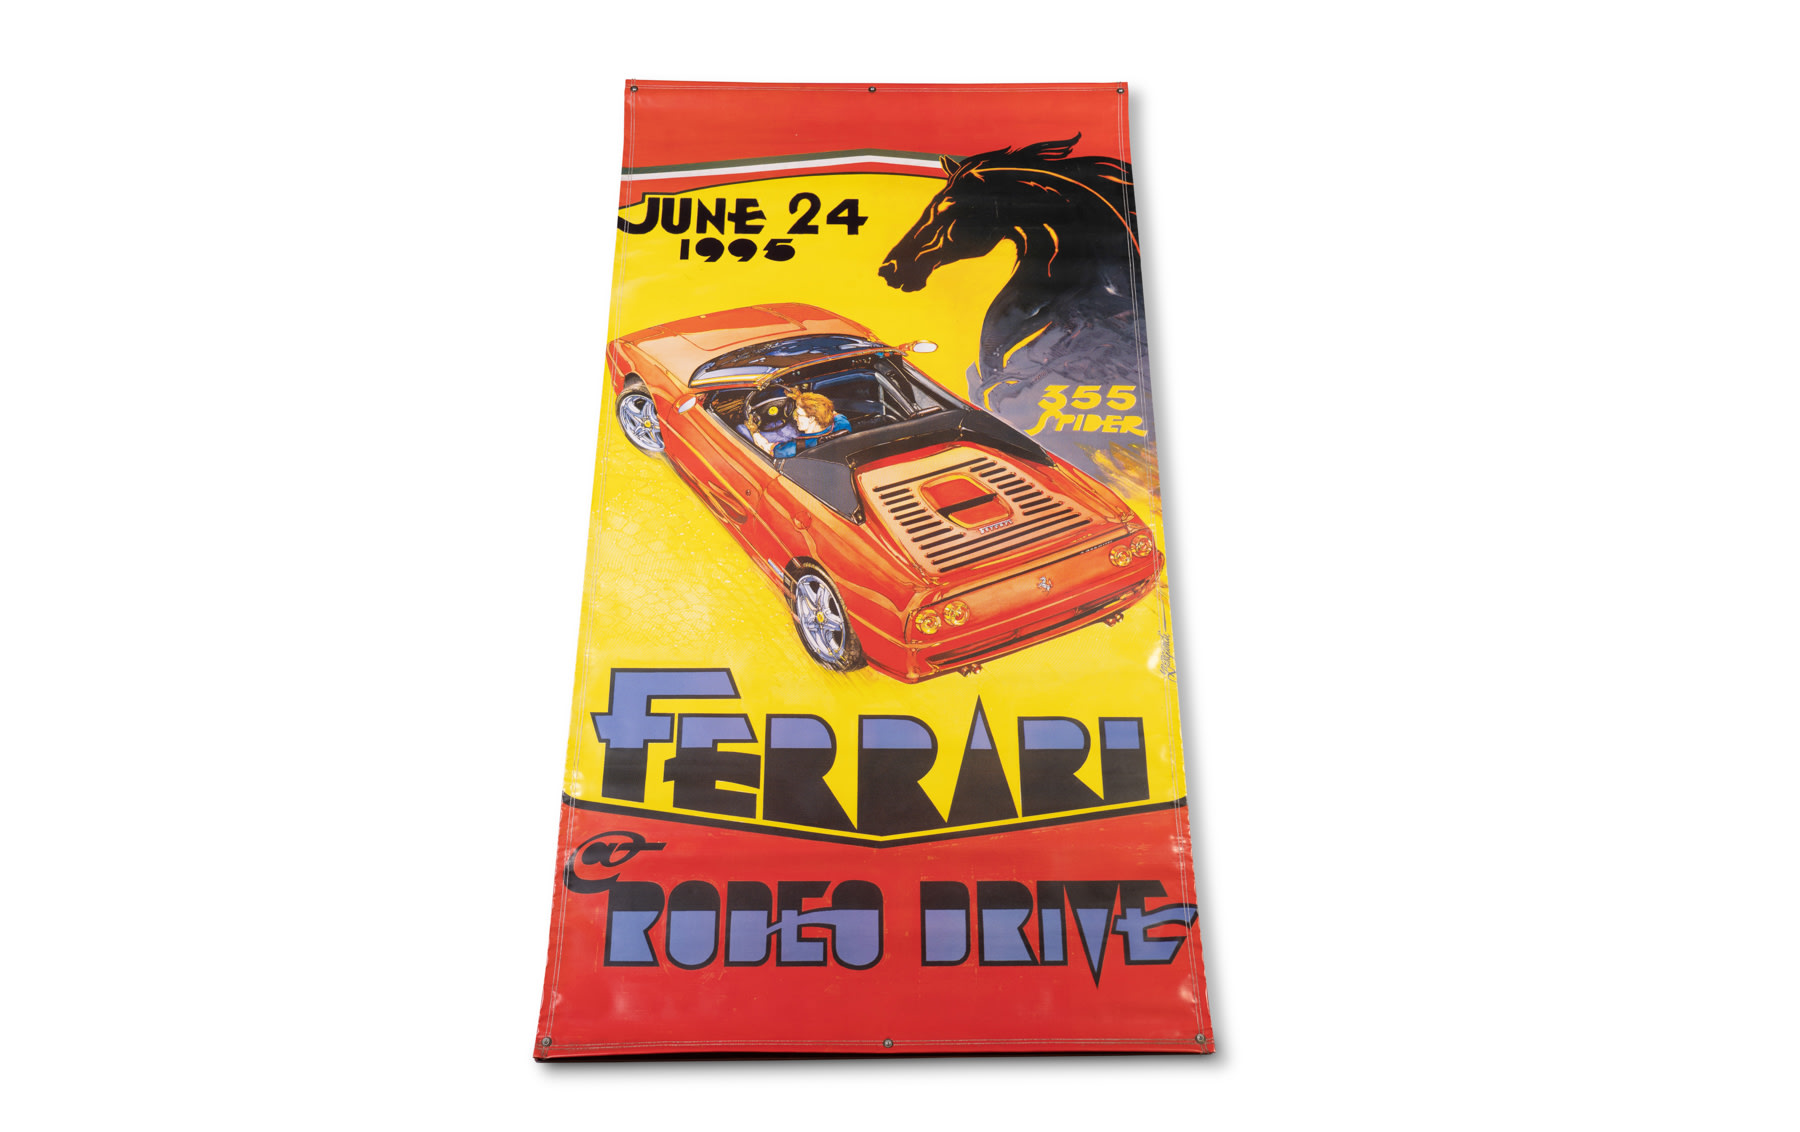 1995 Ferrari at Rodeo Drive Vinyl Event Banner